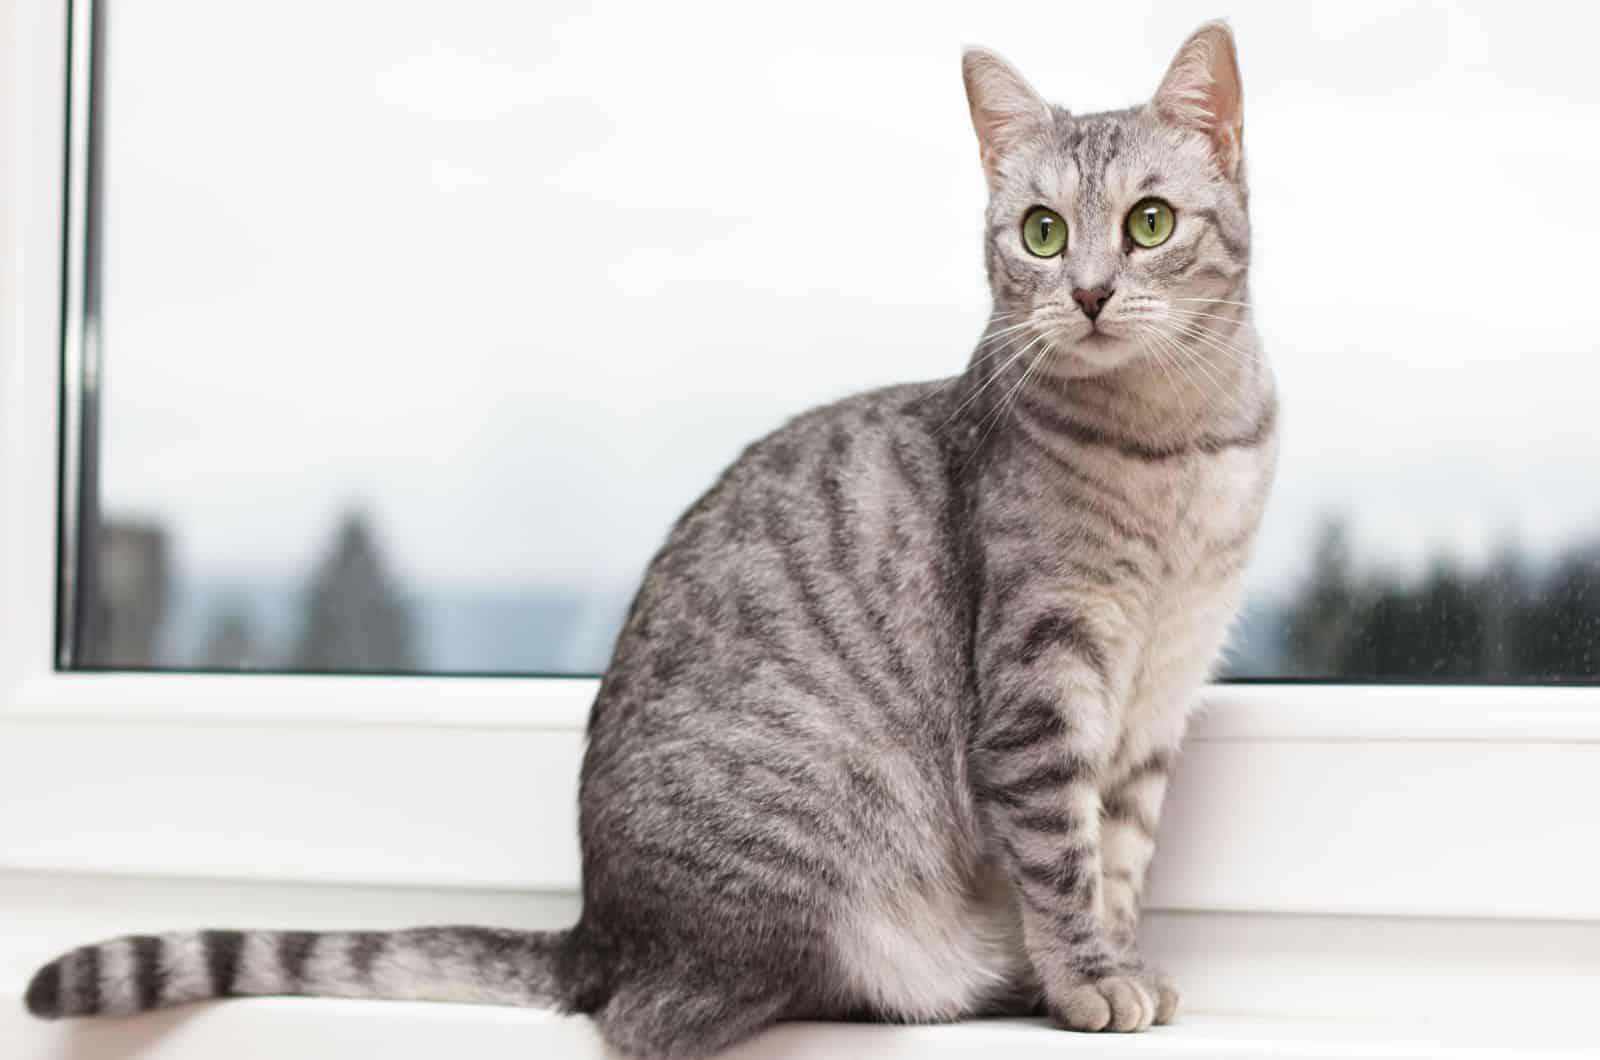 Silver tabby cat sitting on a window shelf